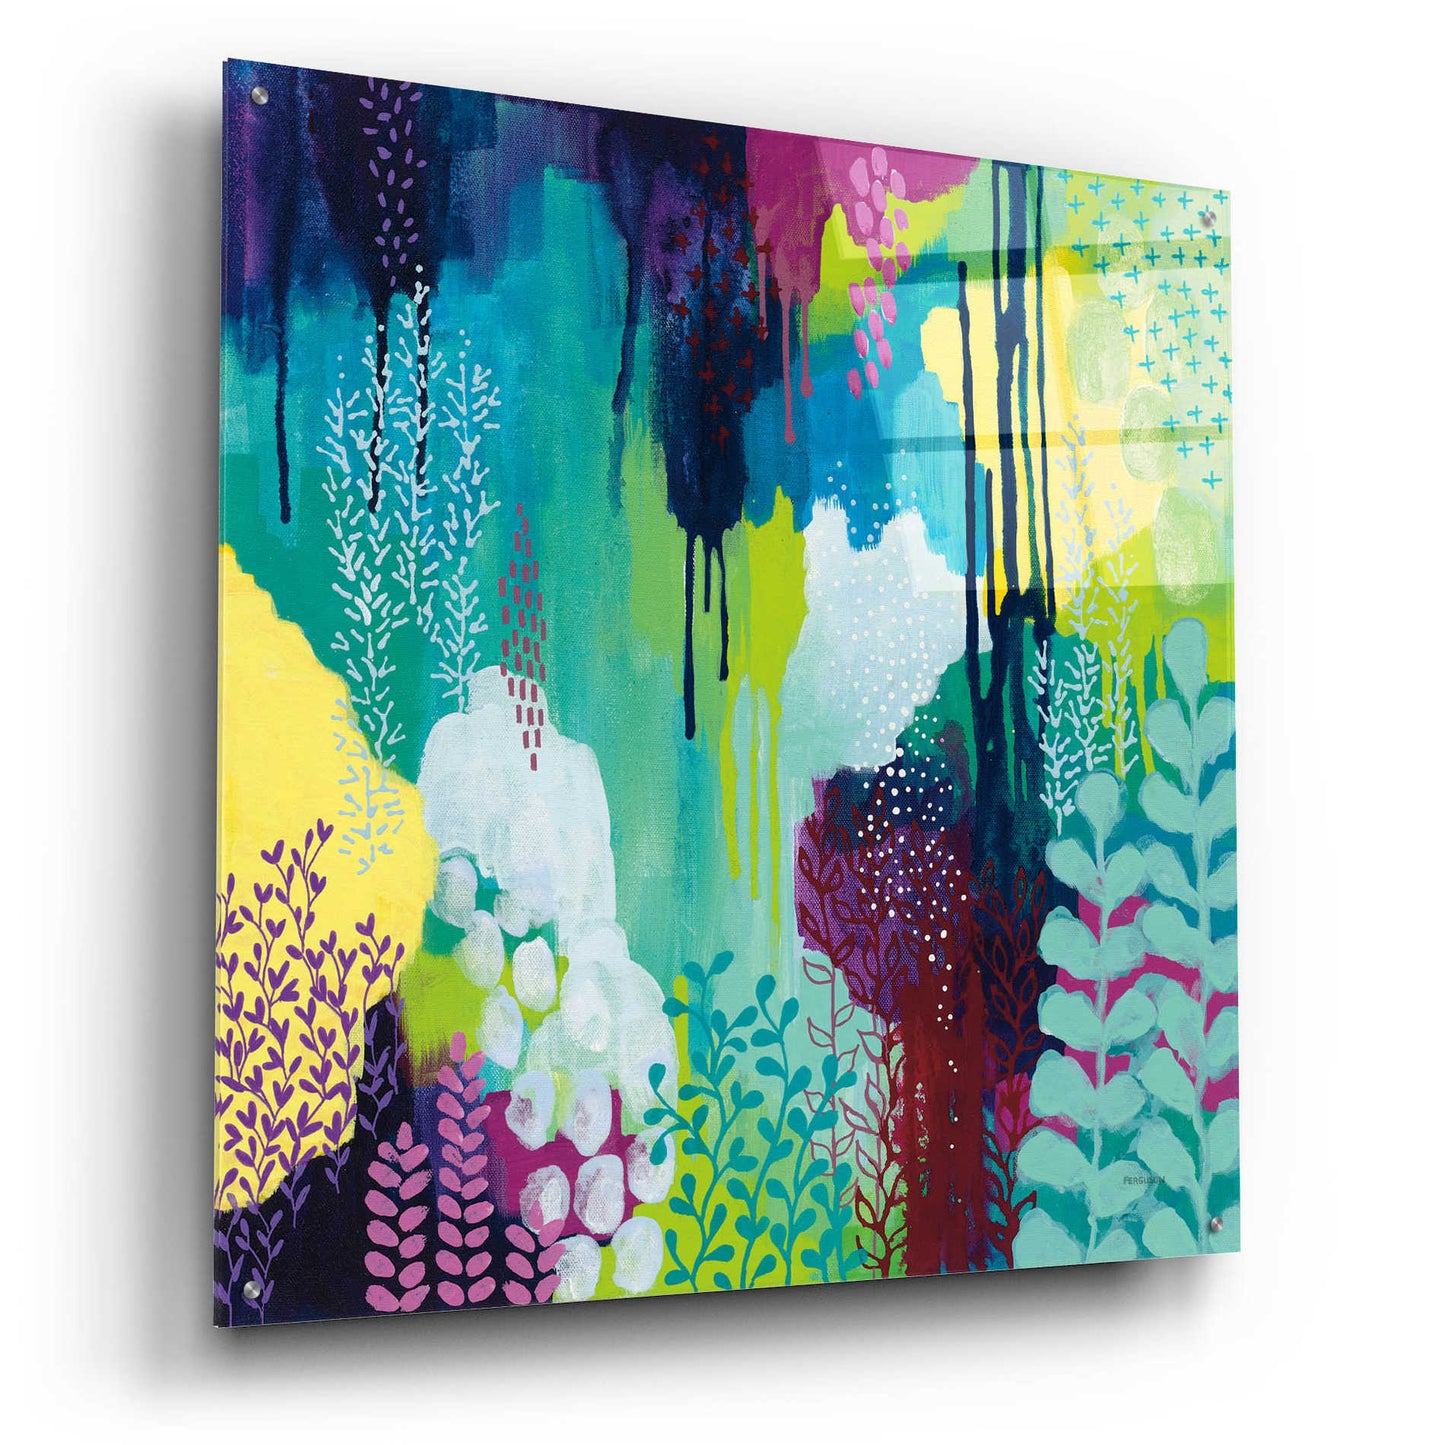 Epic Art 'Jewel Forest I' by Kathy Ferguson, Acrylic Glass Wall Art,36x36